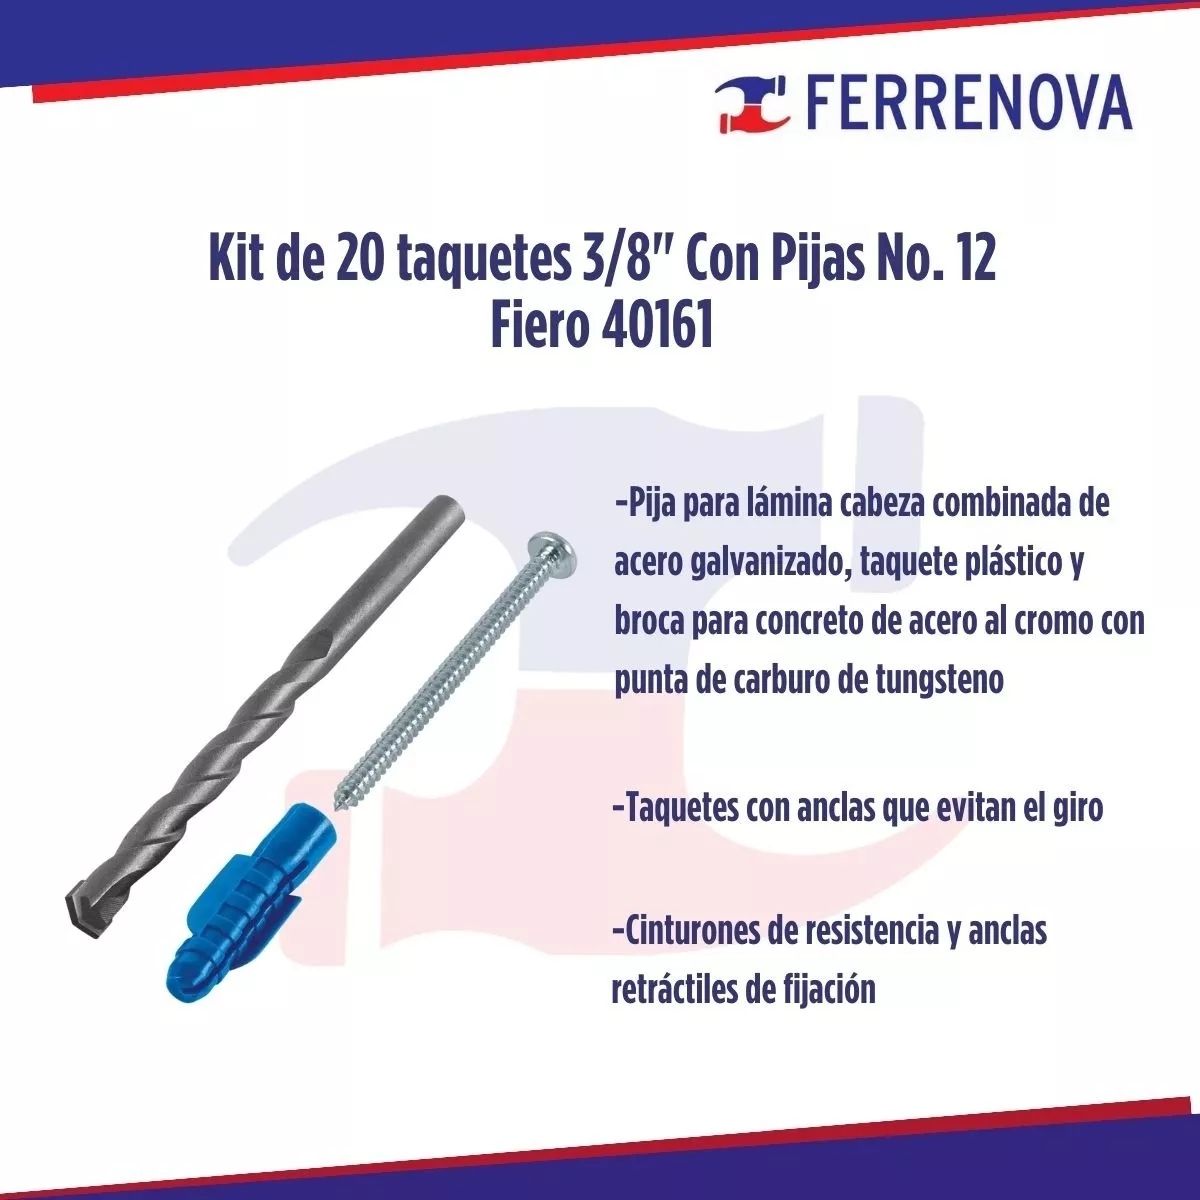 Kit De 20 Taquetes 3/8" Con Pijas No. 12 Fiero 40161